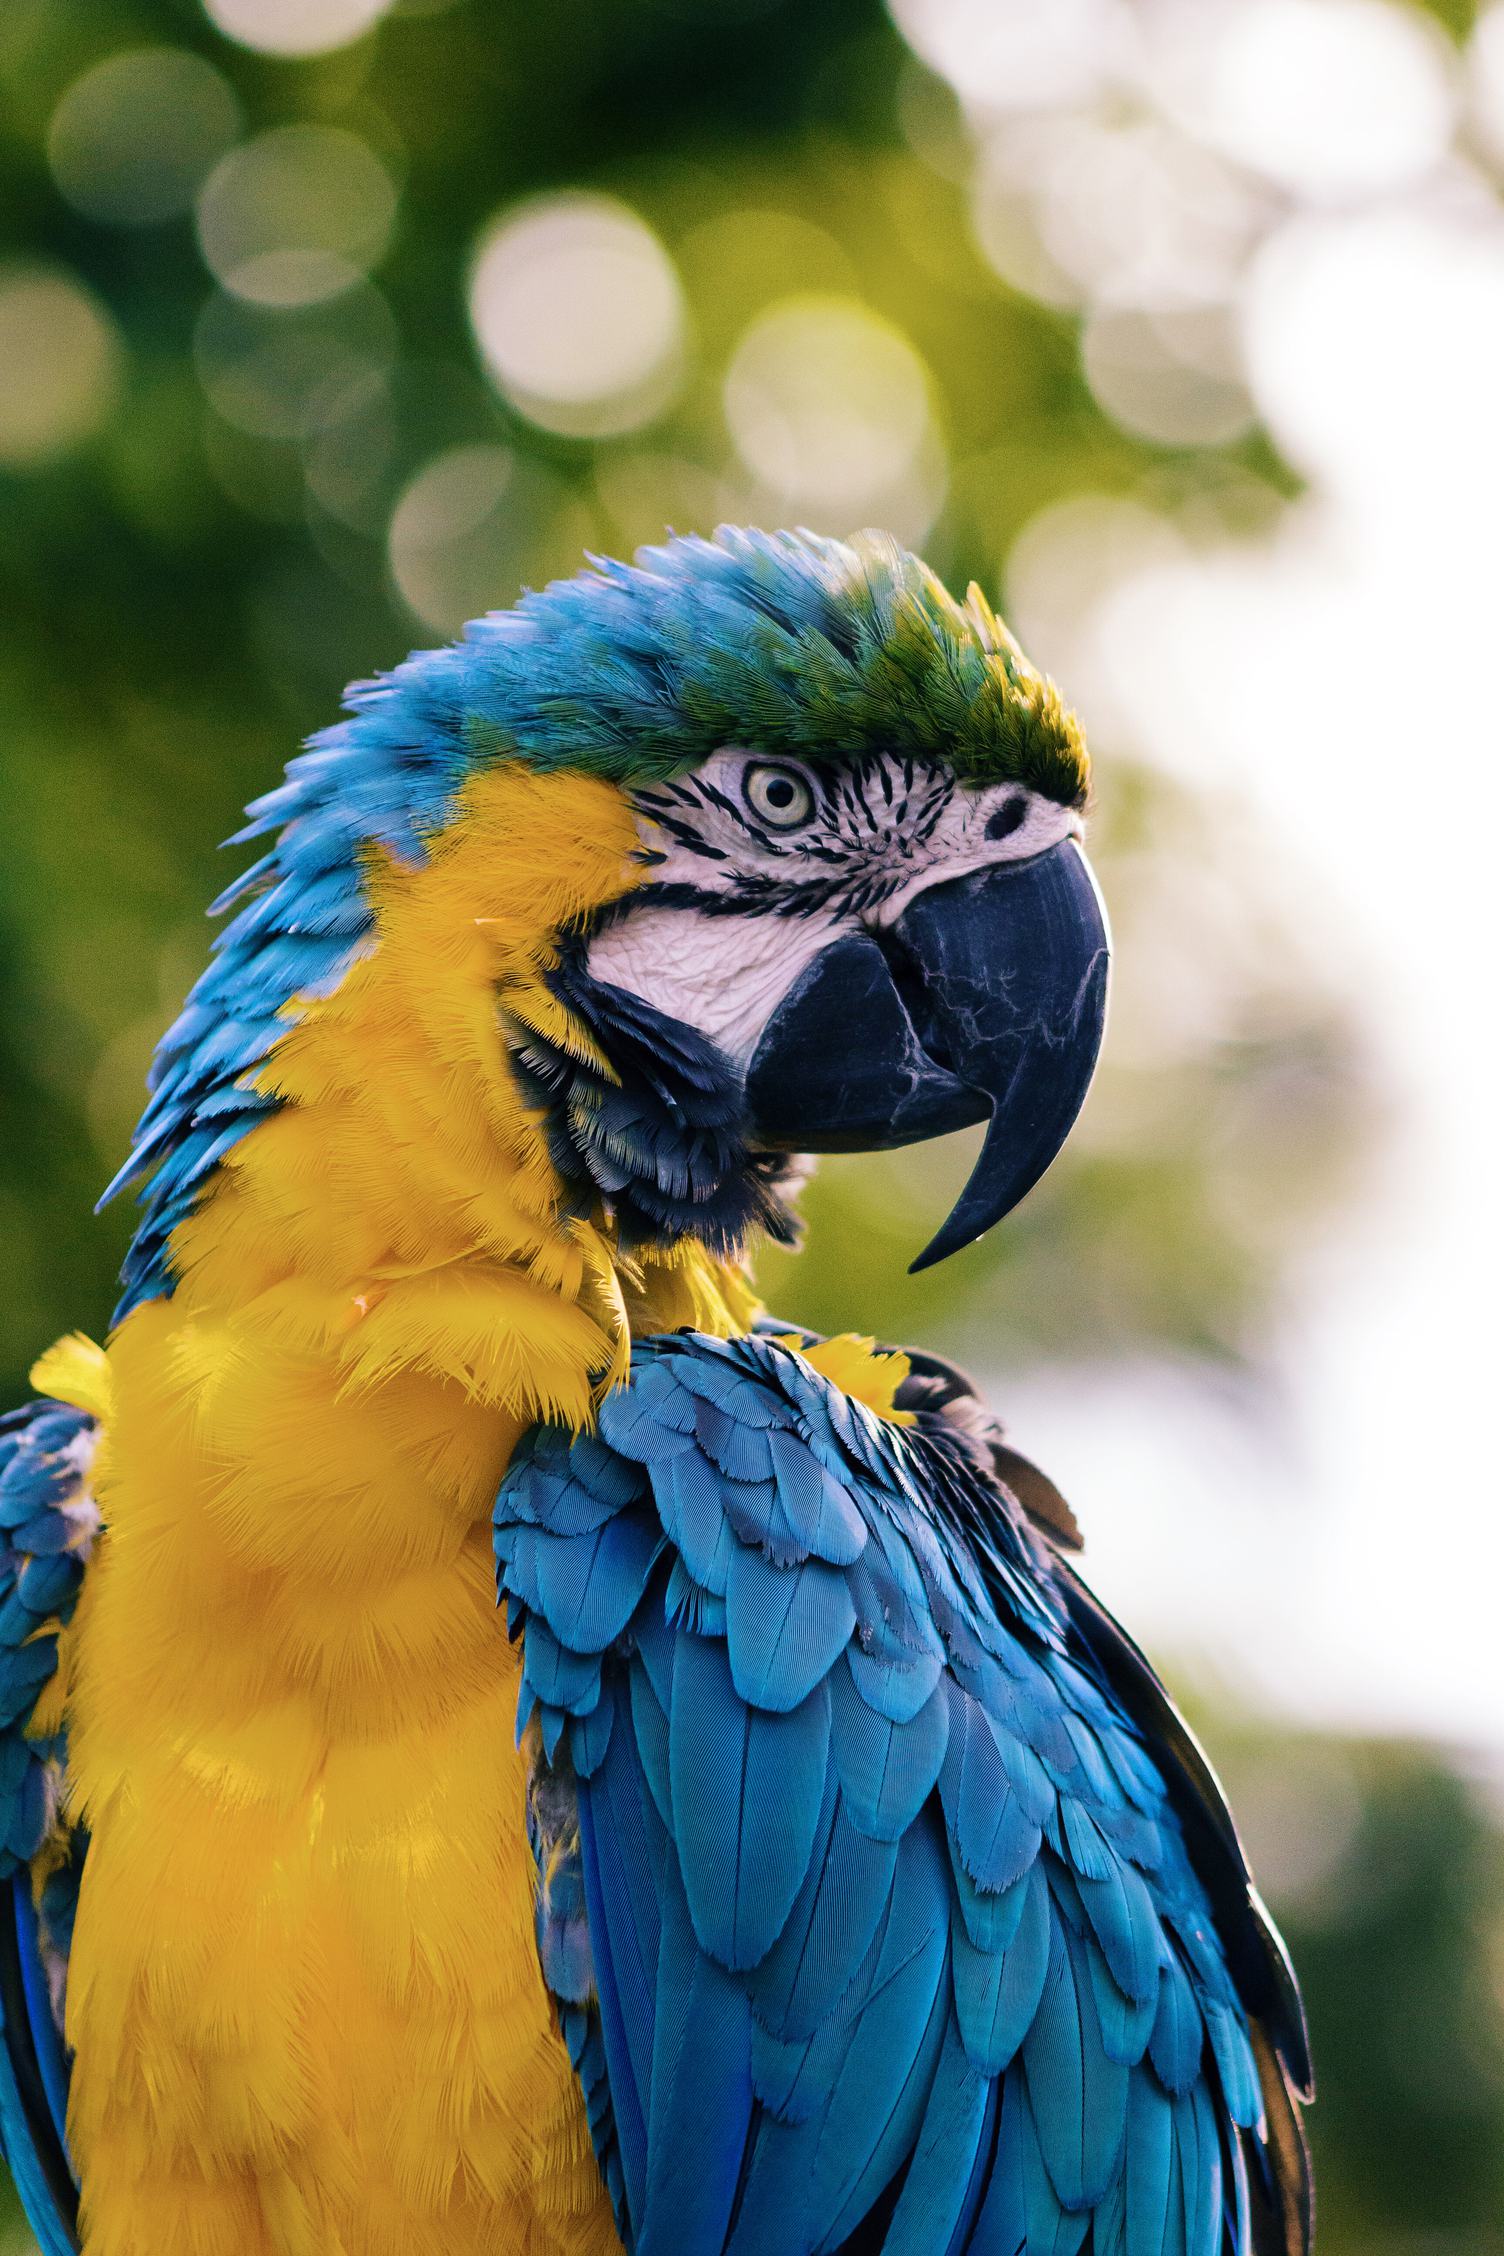 Portrait of Macaw Parrot